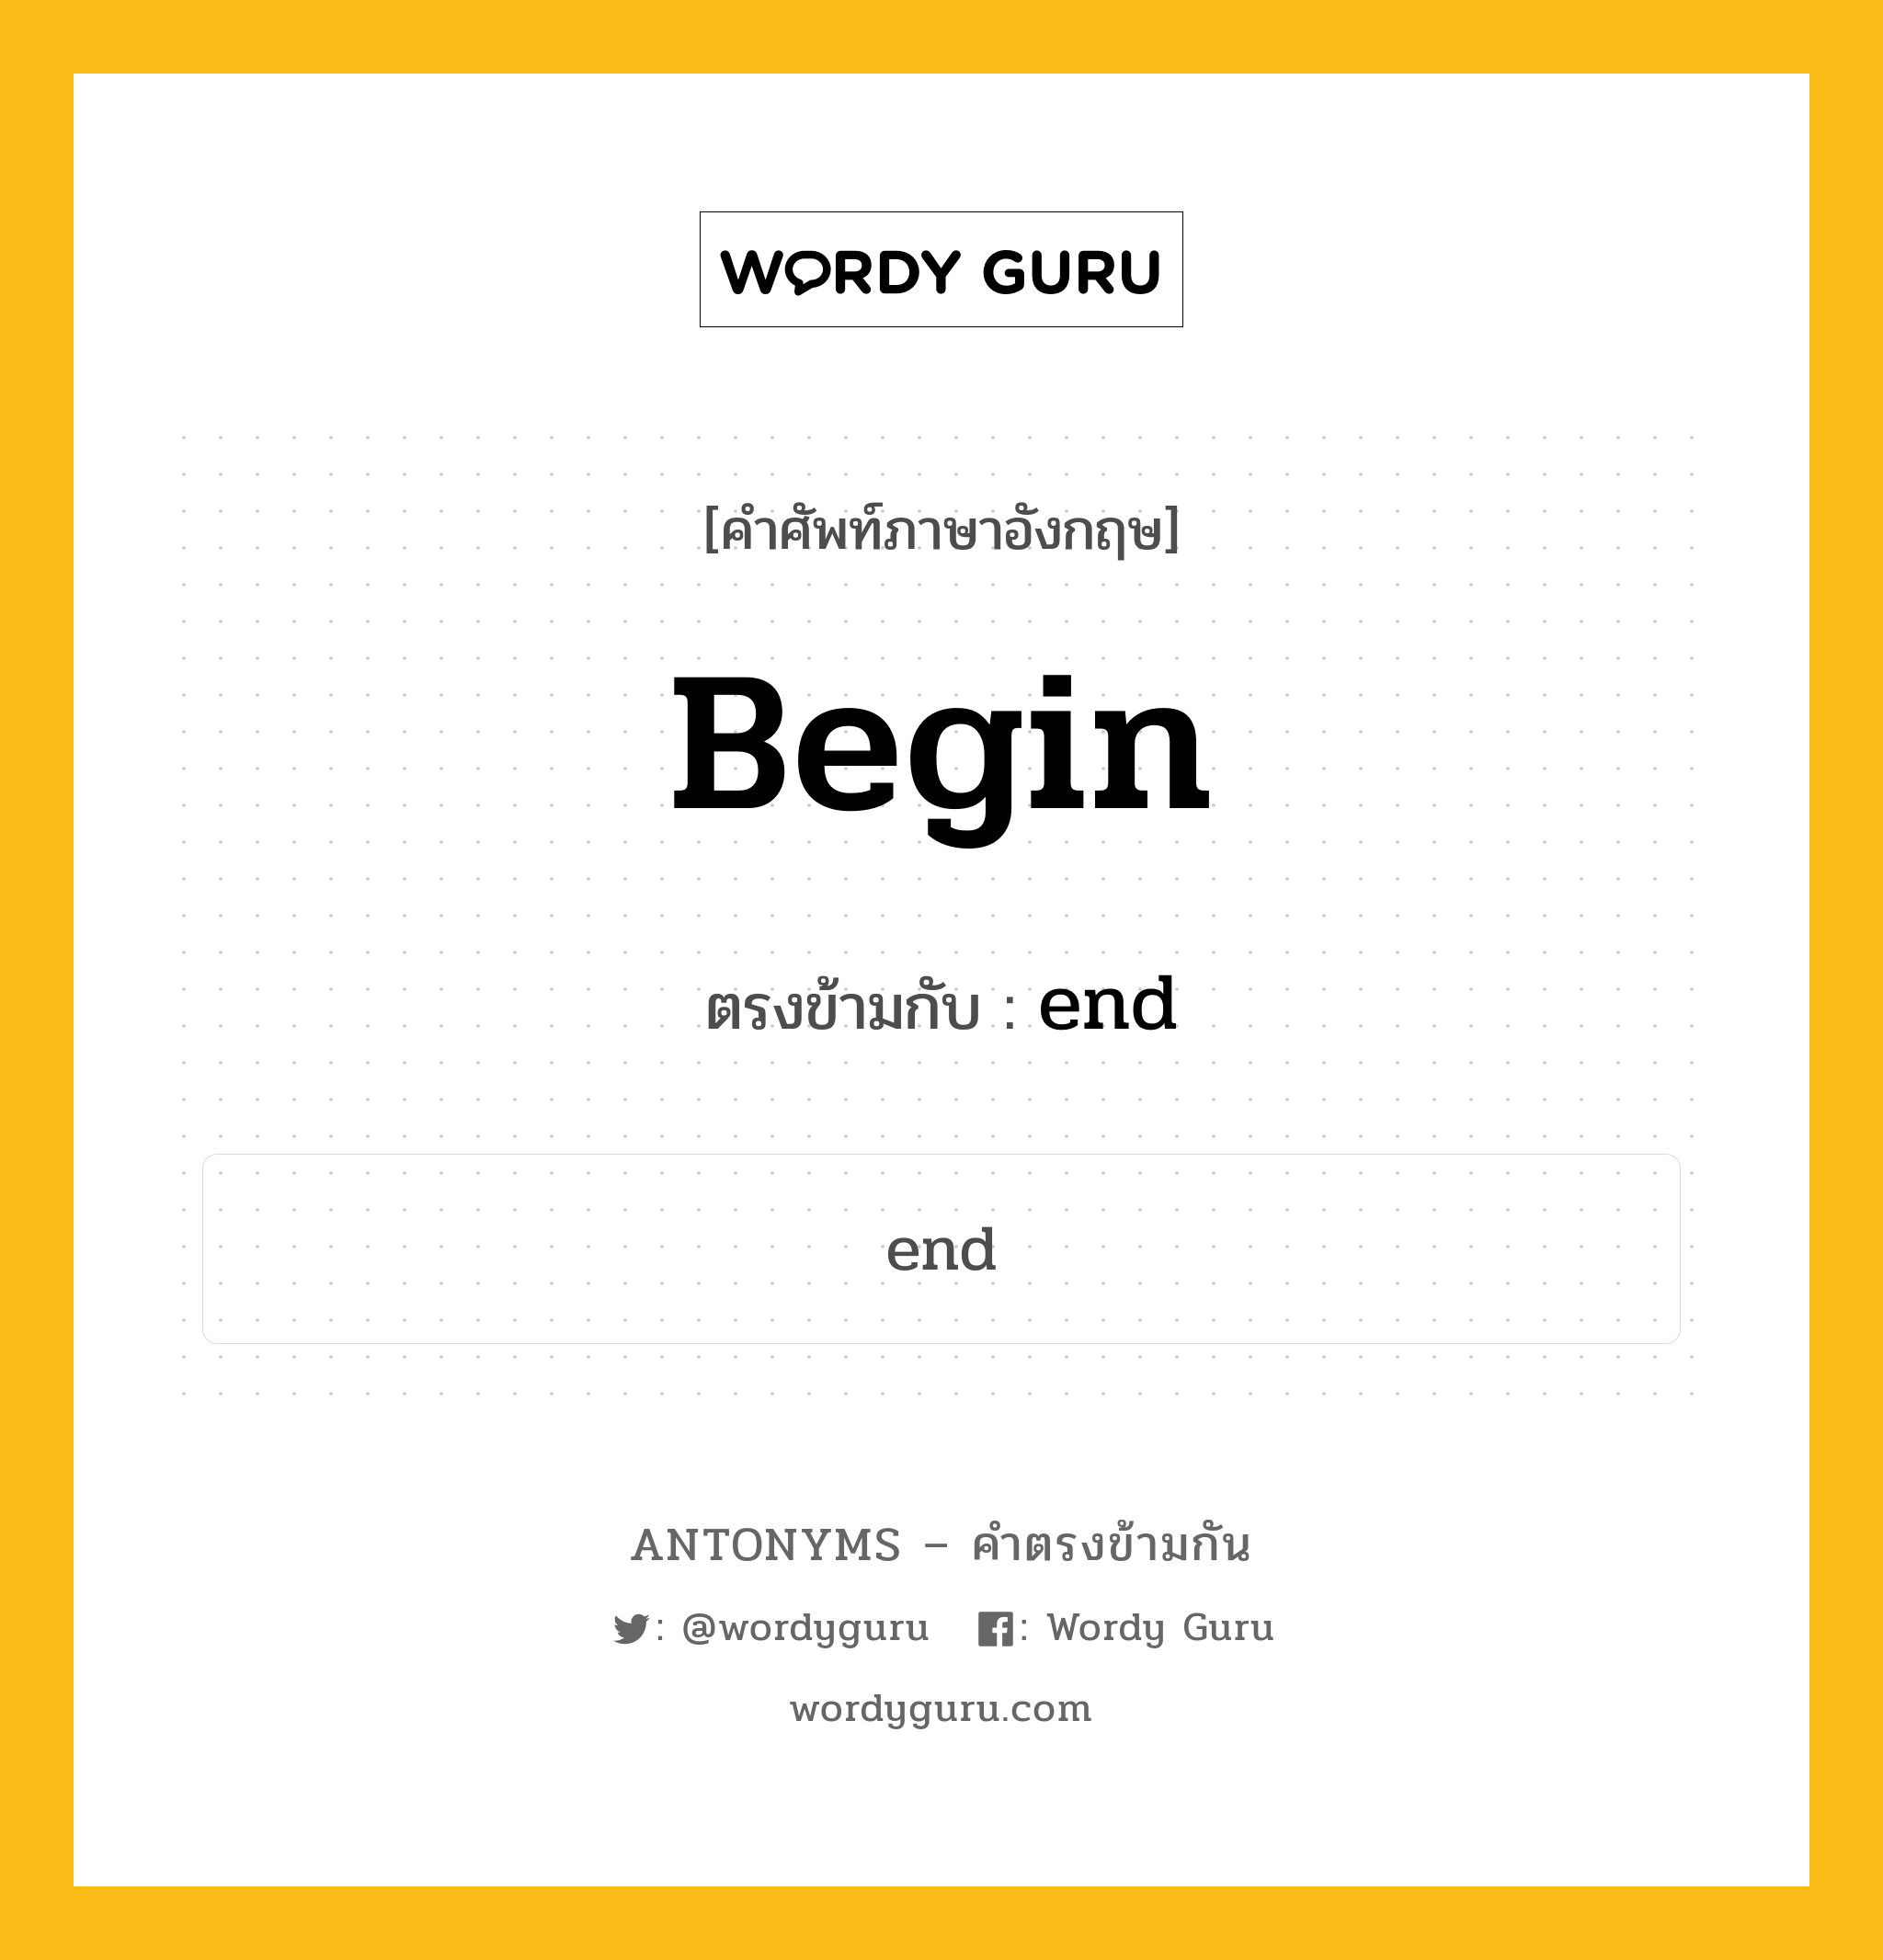 begin เป็นคำตรงข้ามกับคำไหนบ้าง?, คำศัพท์ภาษาอังกฤษ begin ตรงข้ามกับ end หมวด end